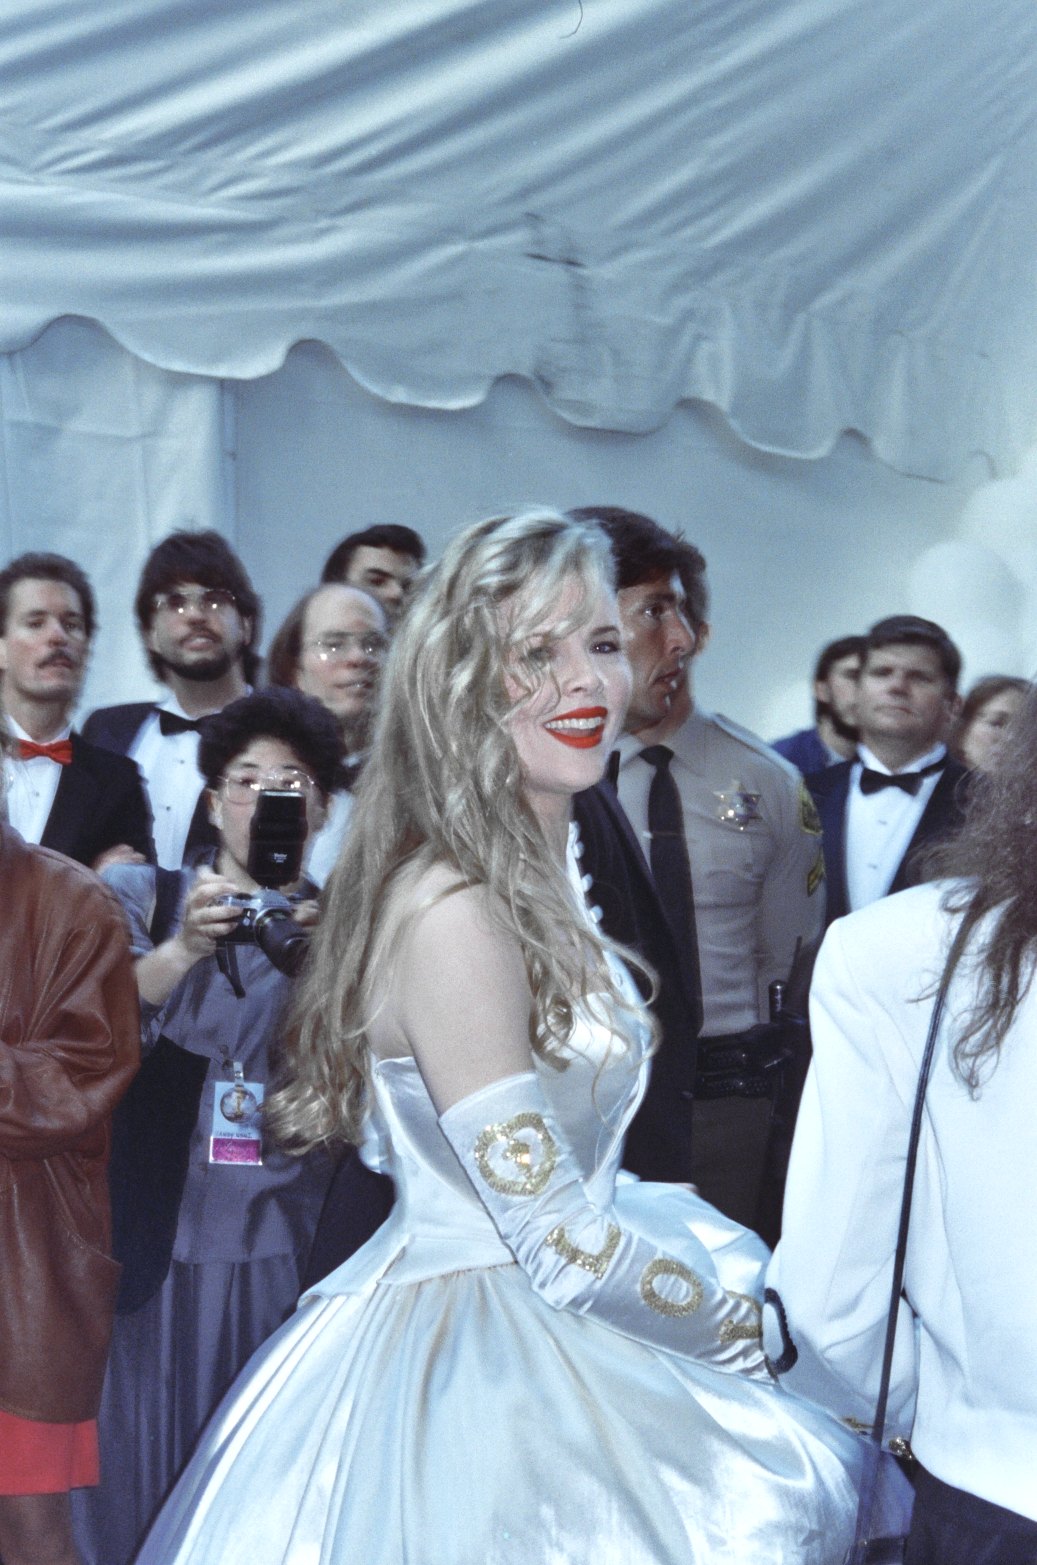 Kim Basinger Academy Awards on 1990, Mar. 26